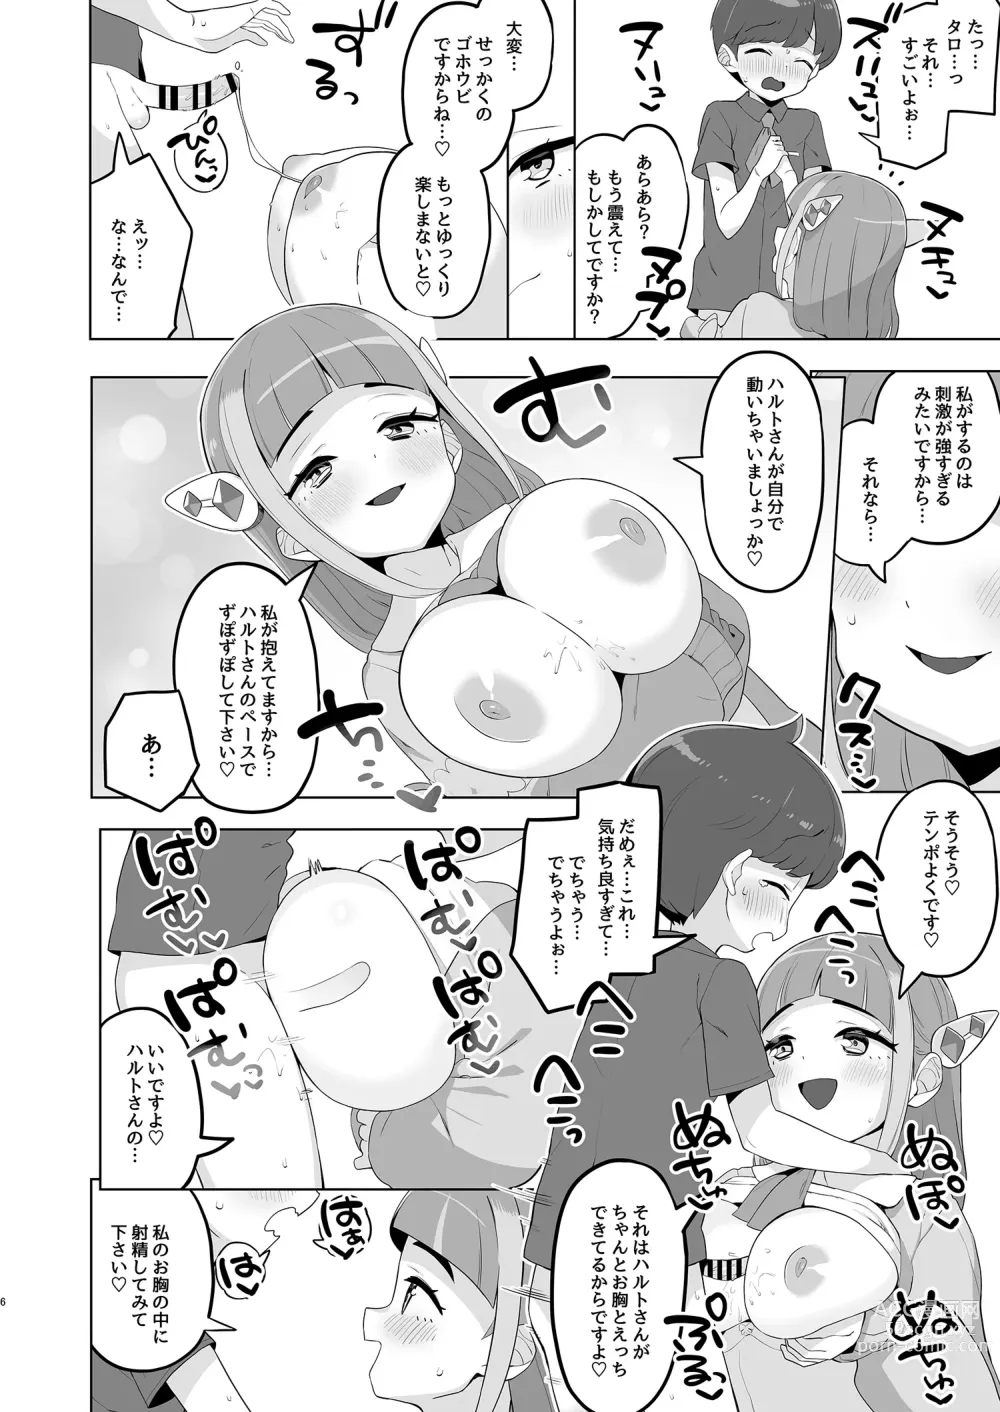 Page 6 of doujinshi Taro no kawaii ryugakusei ikusei keikaku